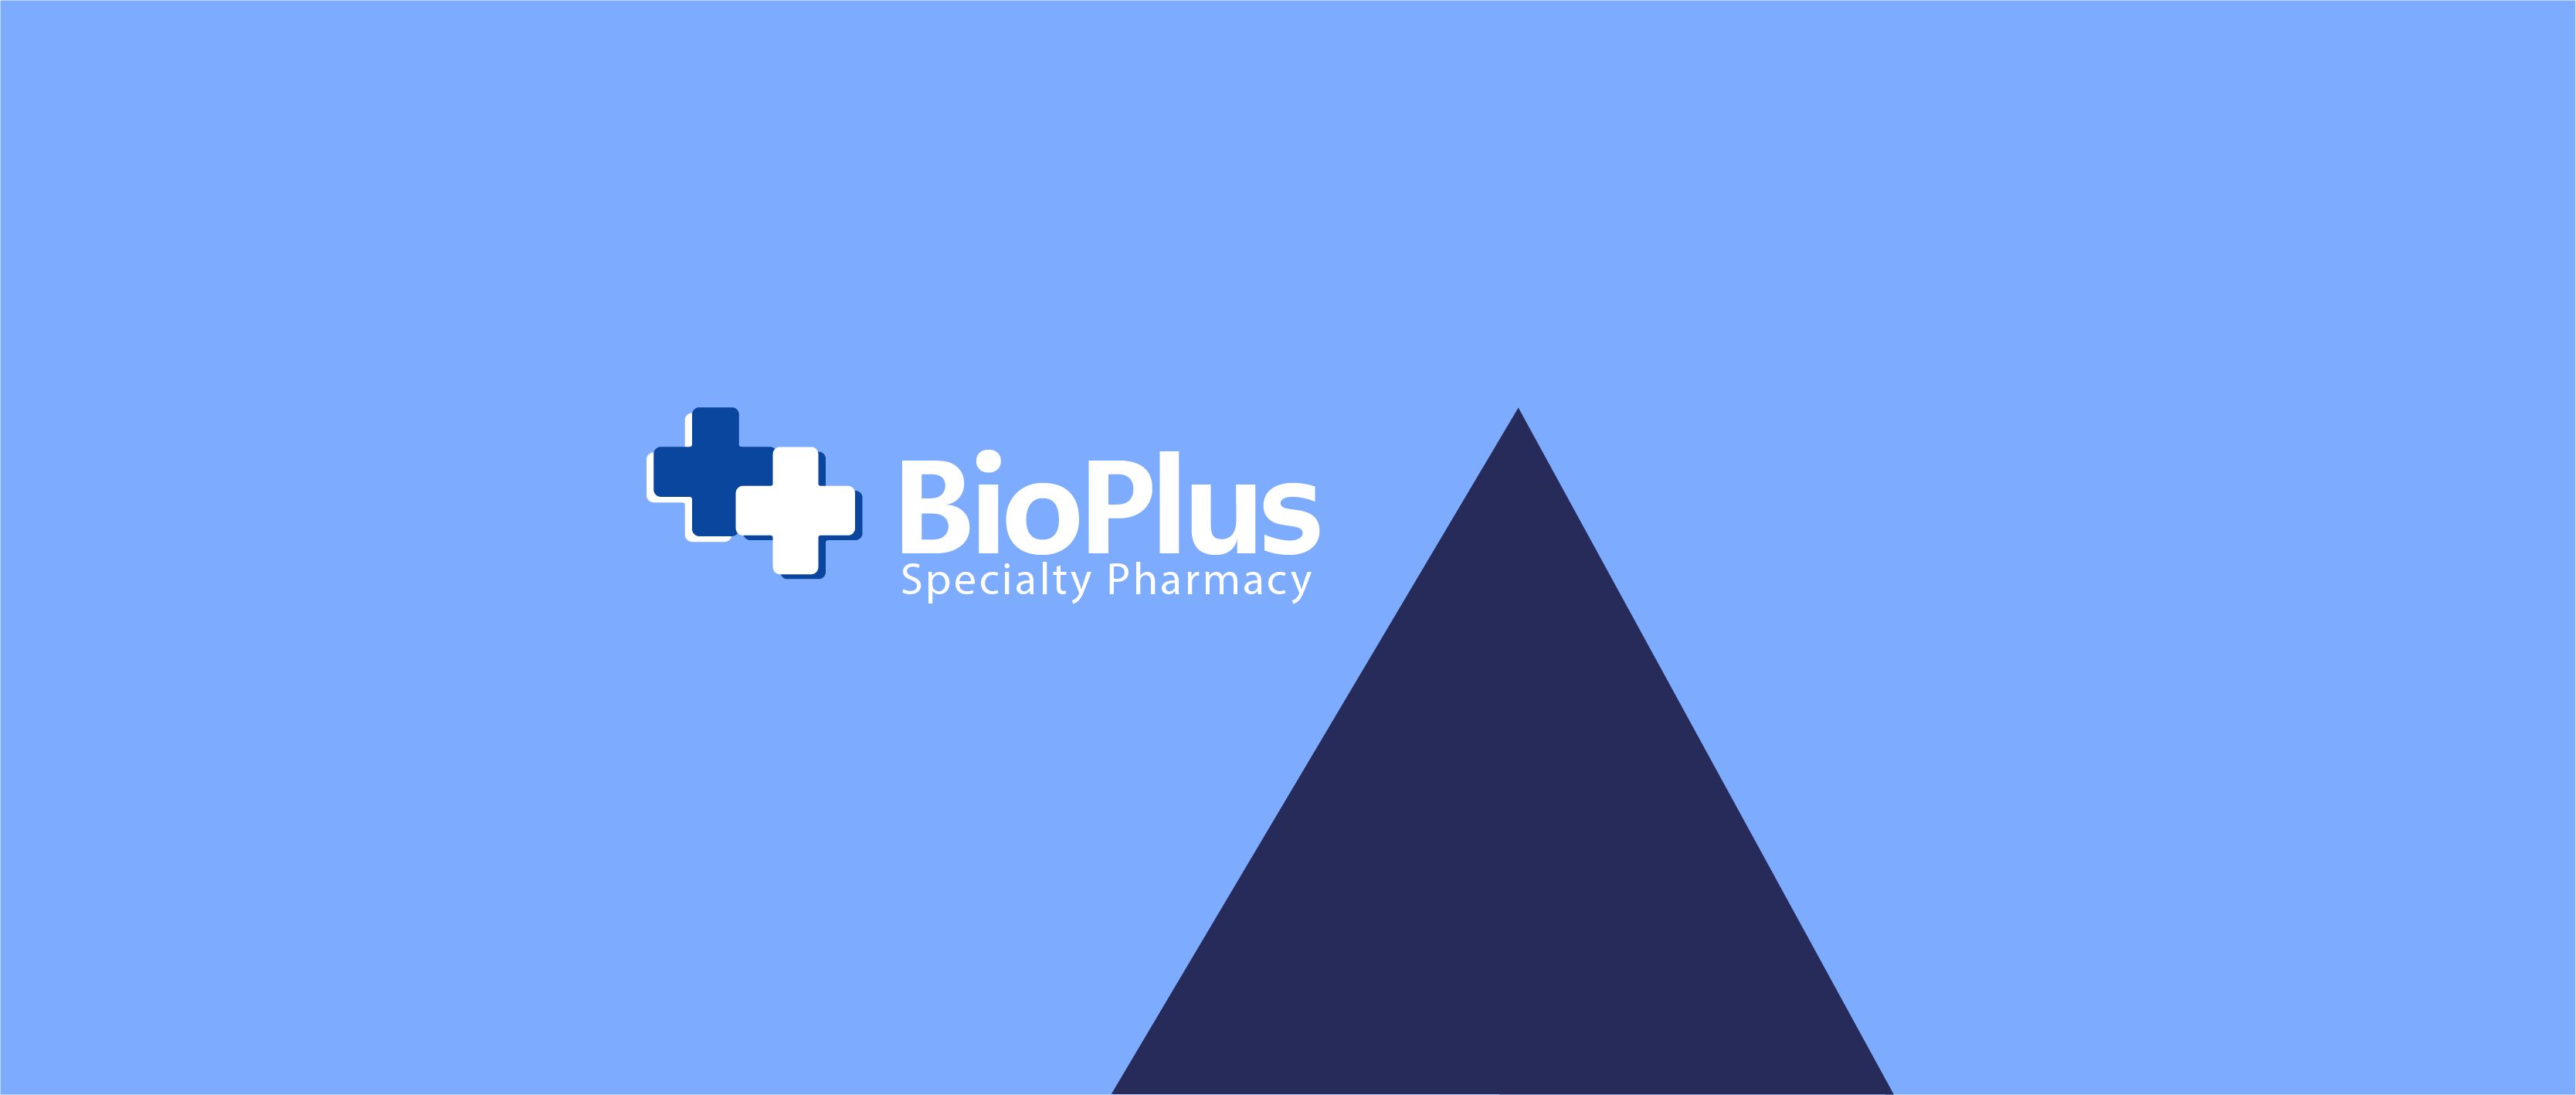 BioPlus_Case Study_Header